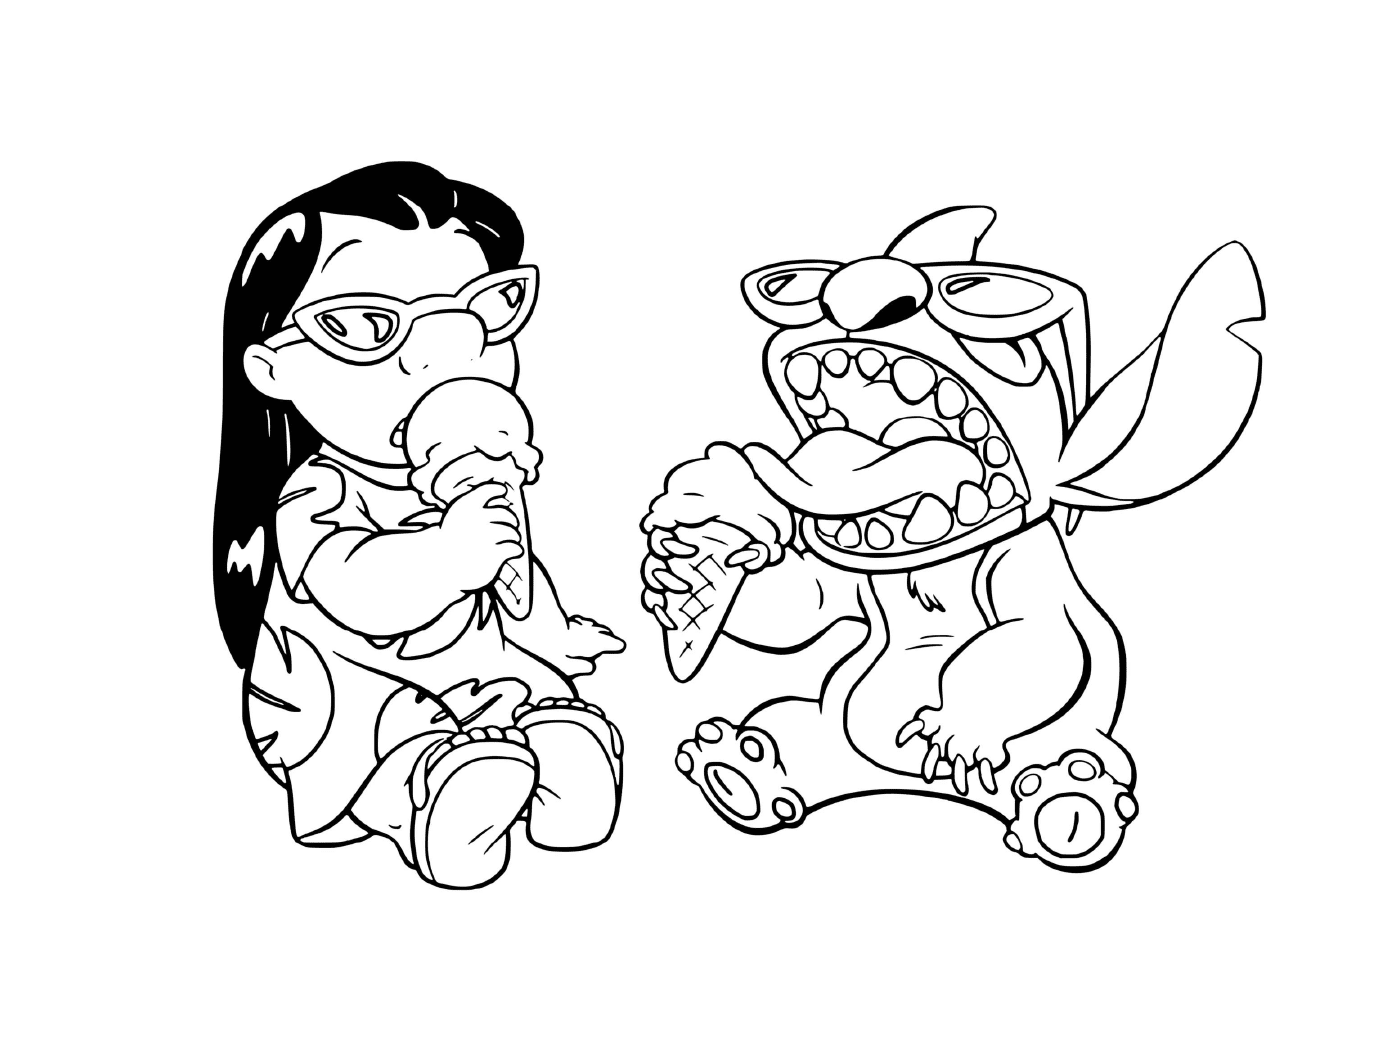   Stitch et Lilo mangent de la glace 